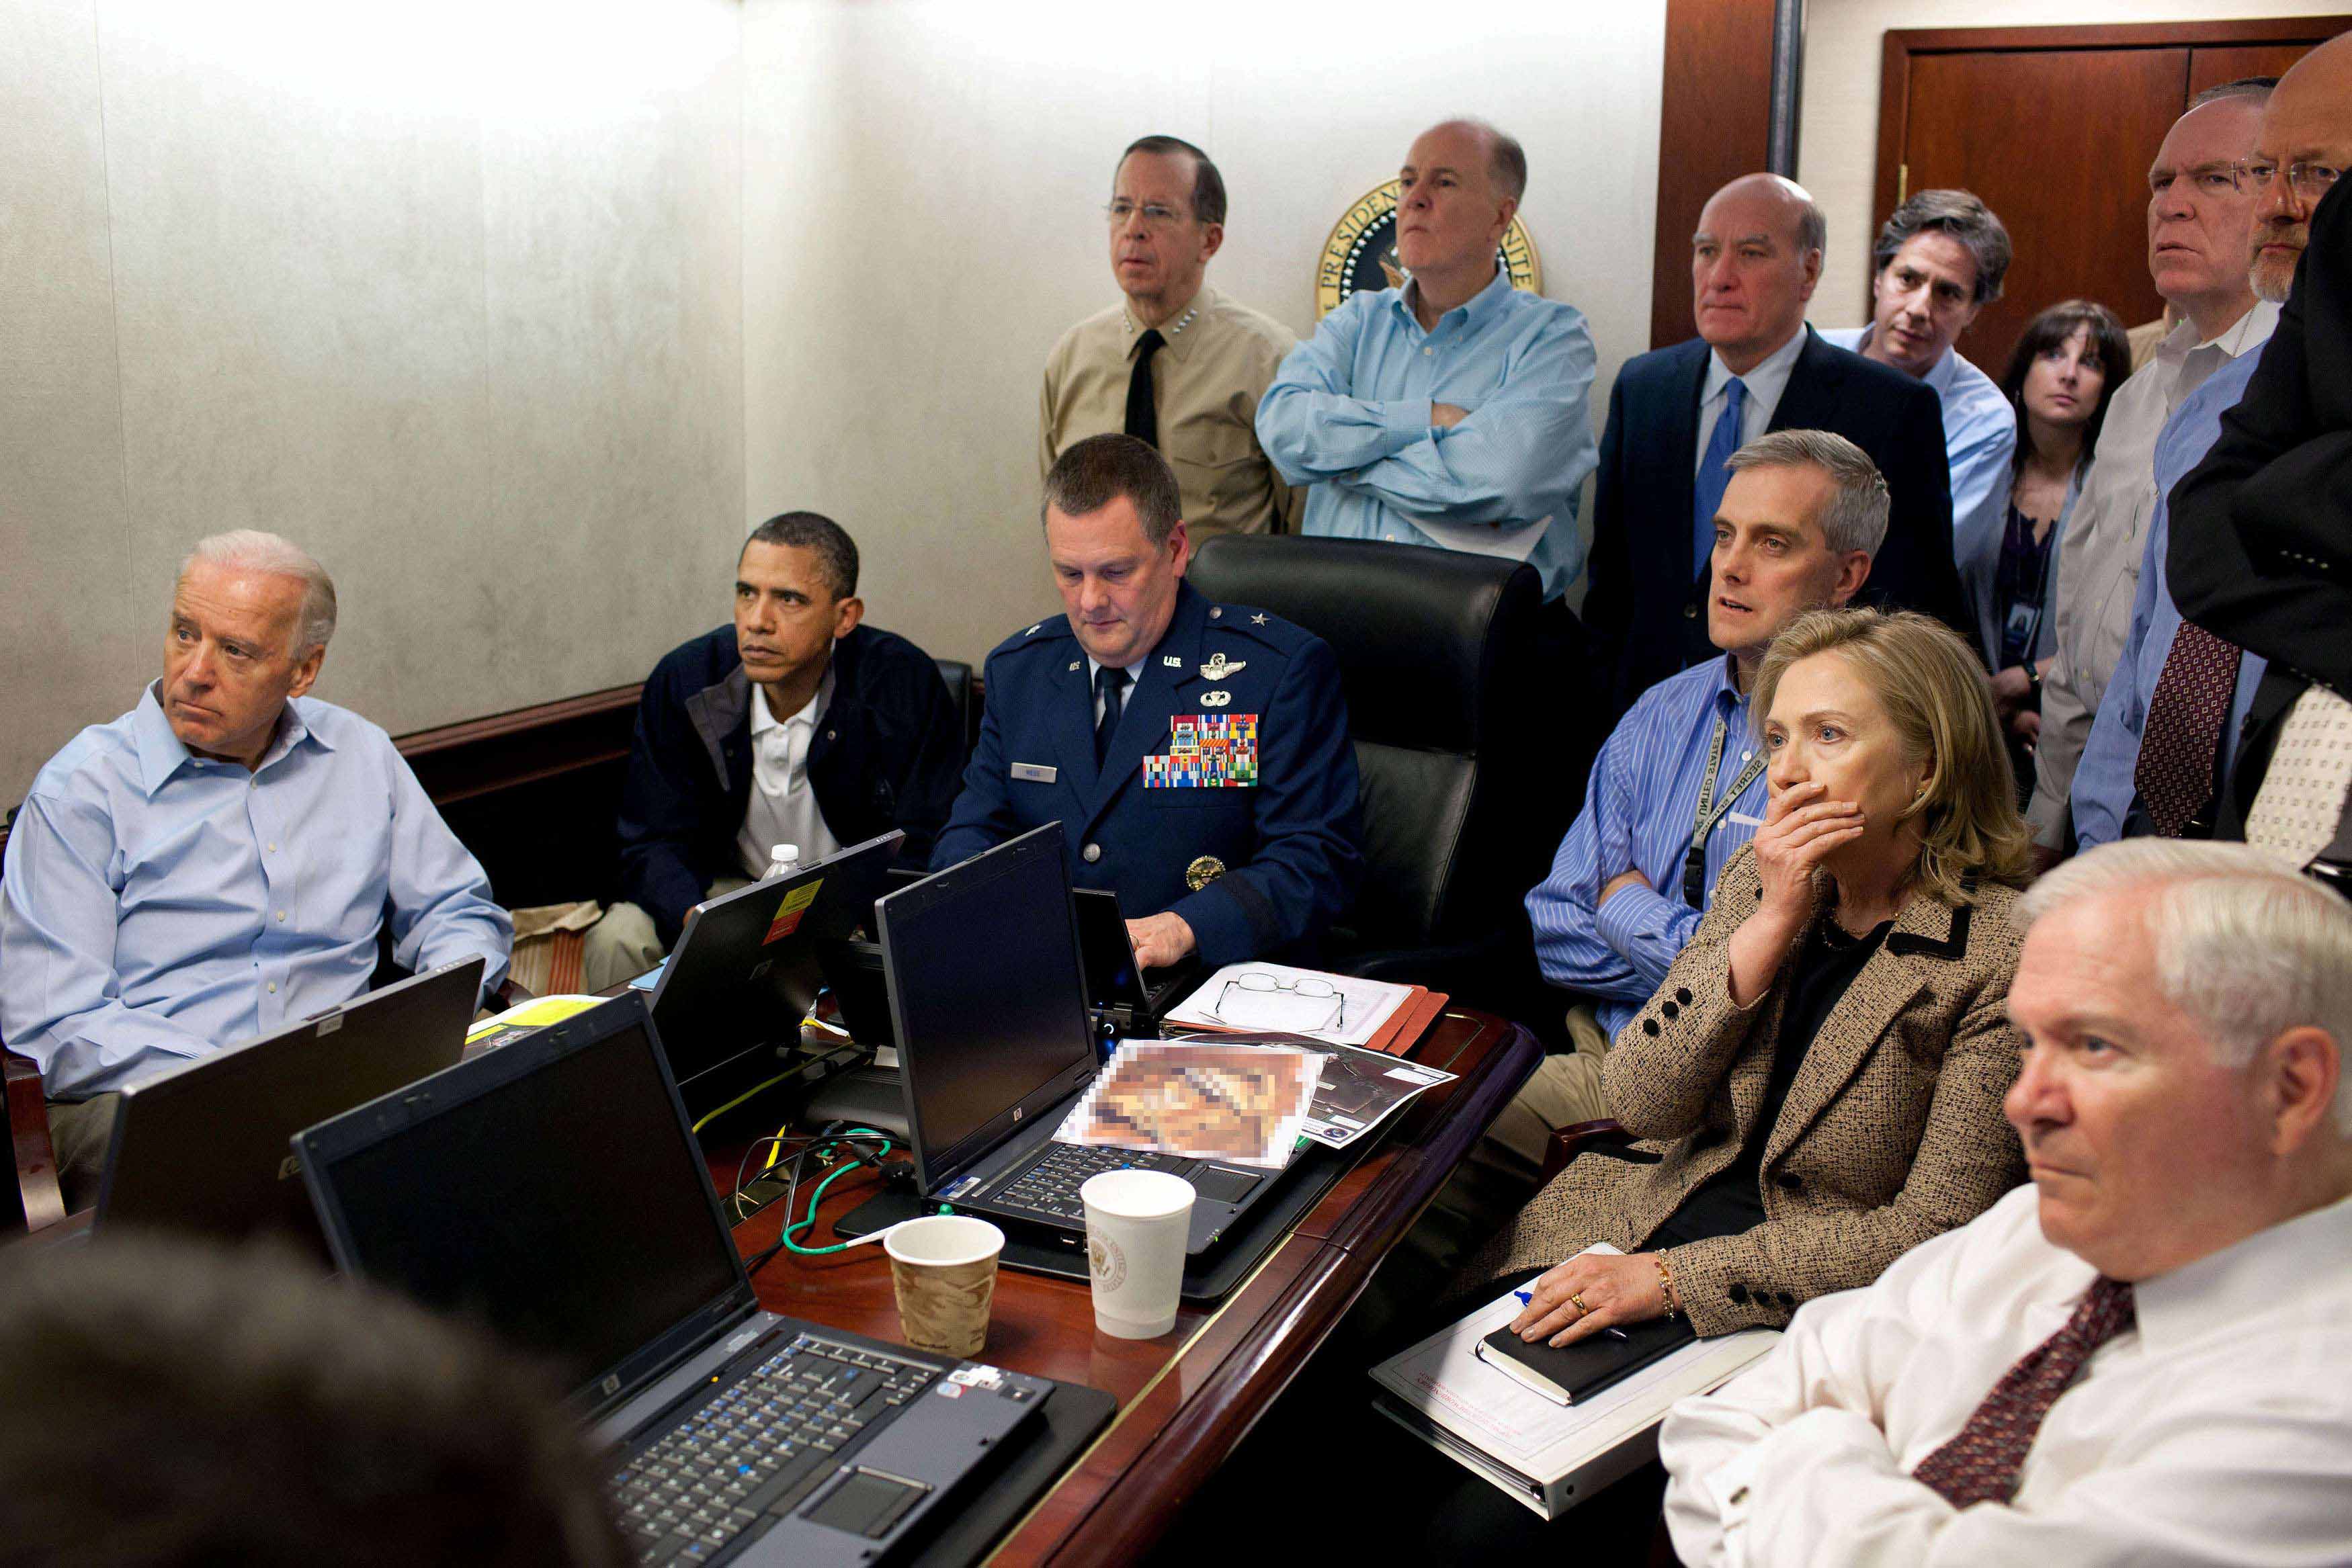 مقتل بن لادن كلف واشنطن انخراطا عسكريا في أفغانستان بترليون دولار